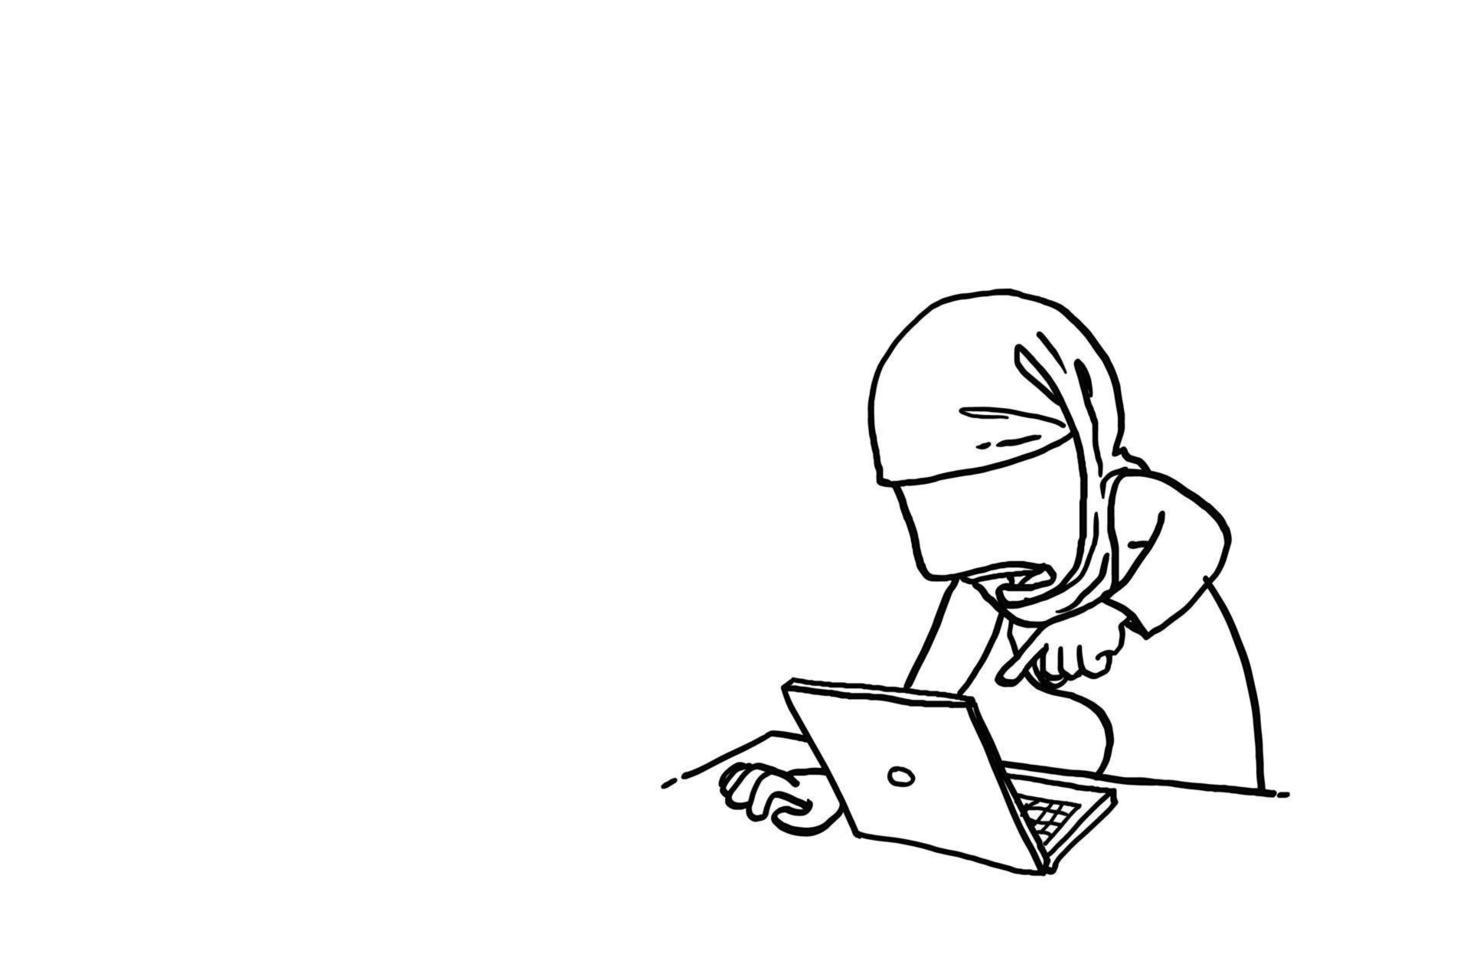 donna musulmana arrabbiata che punta il dito sul monitor del laptop. concetto di stress da lavoro. disegno dell'illustrazione di vettore del fumetto.